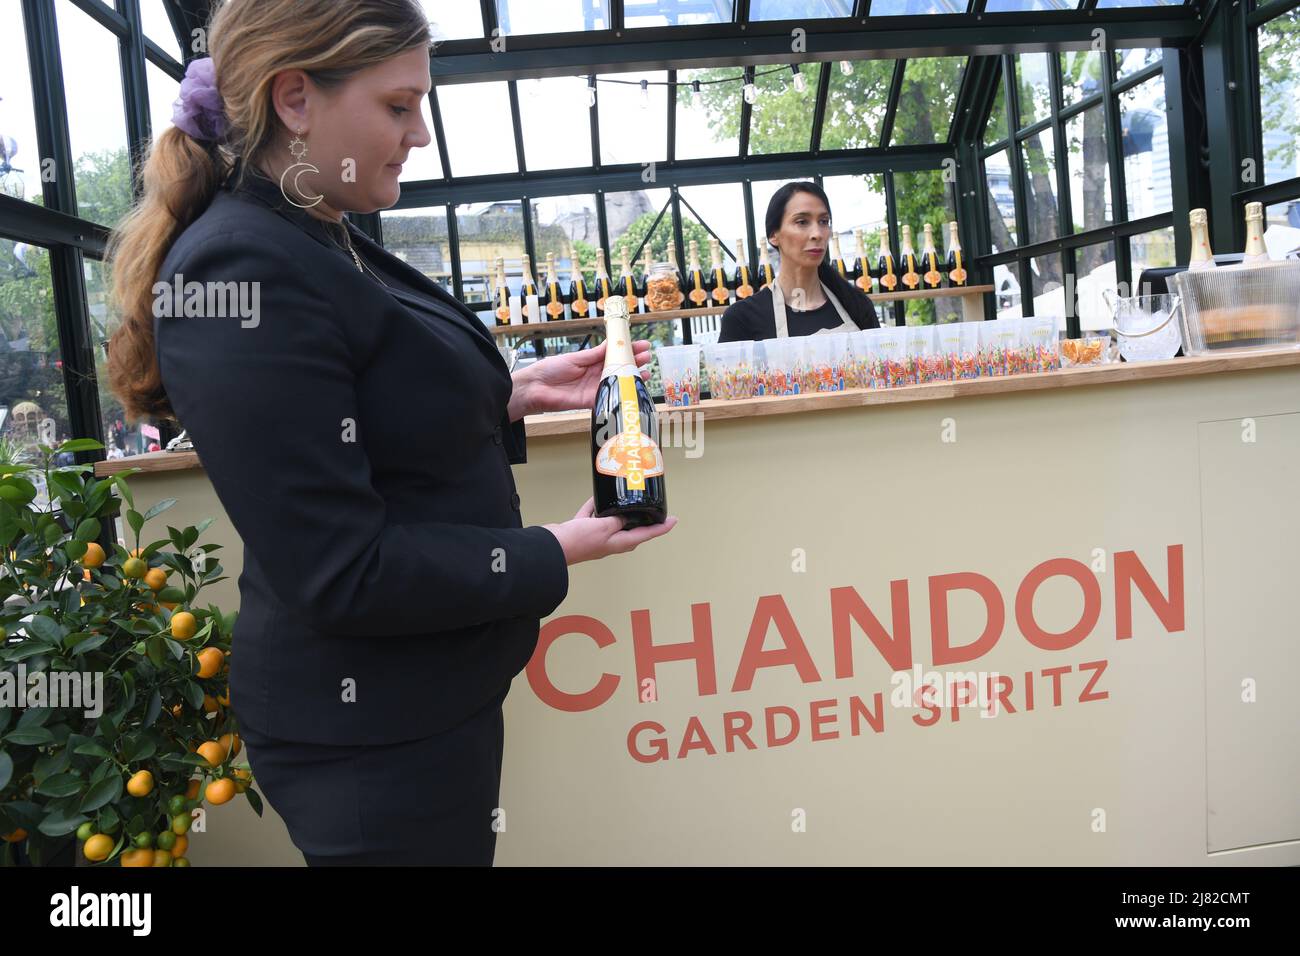 Chandon Garden Spritz - The Foodies' Kitchen